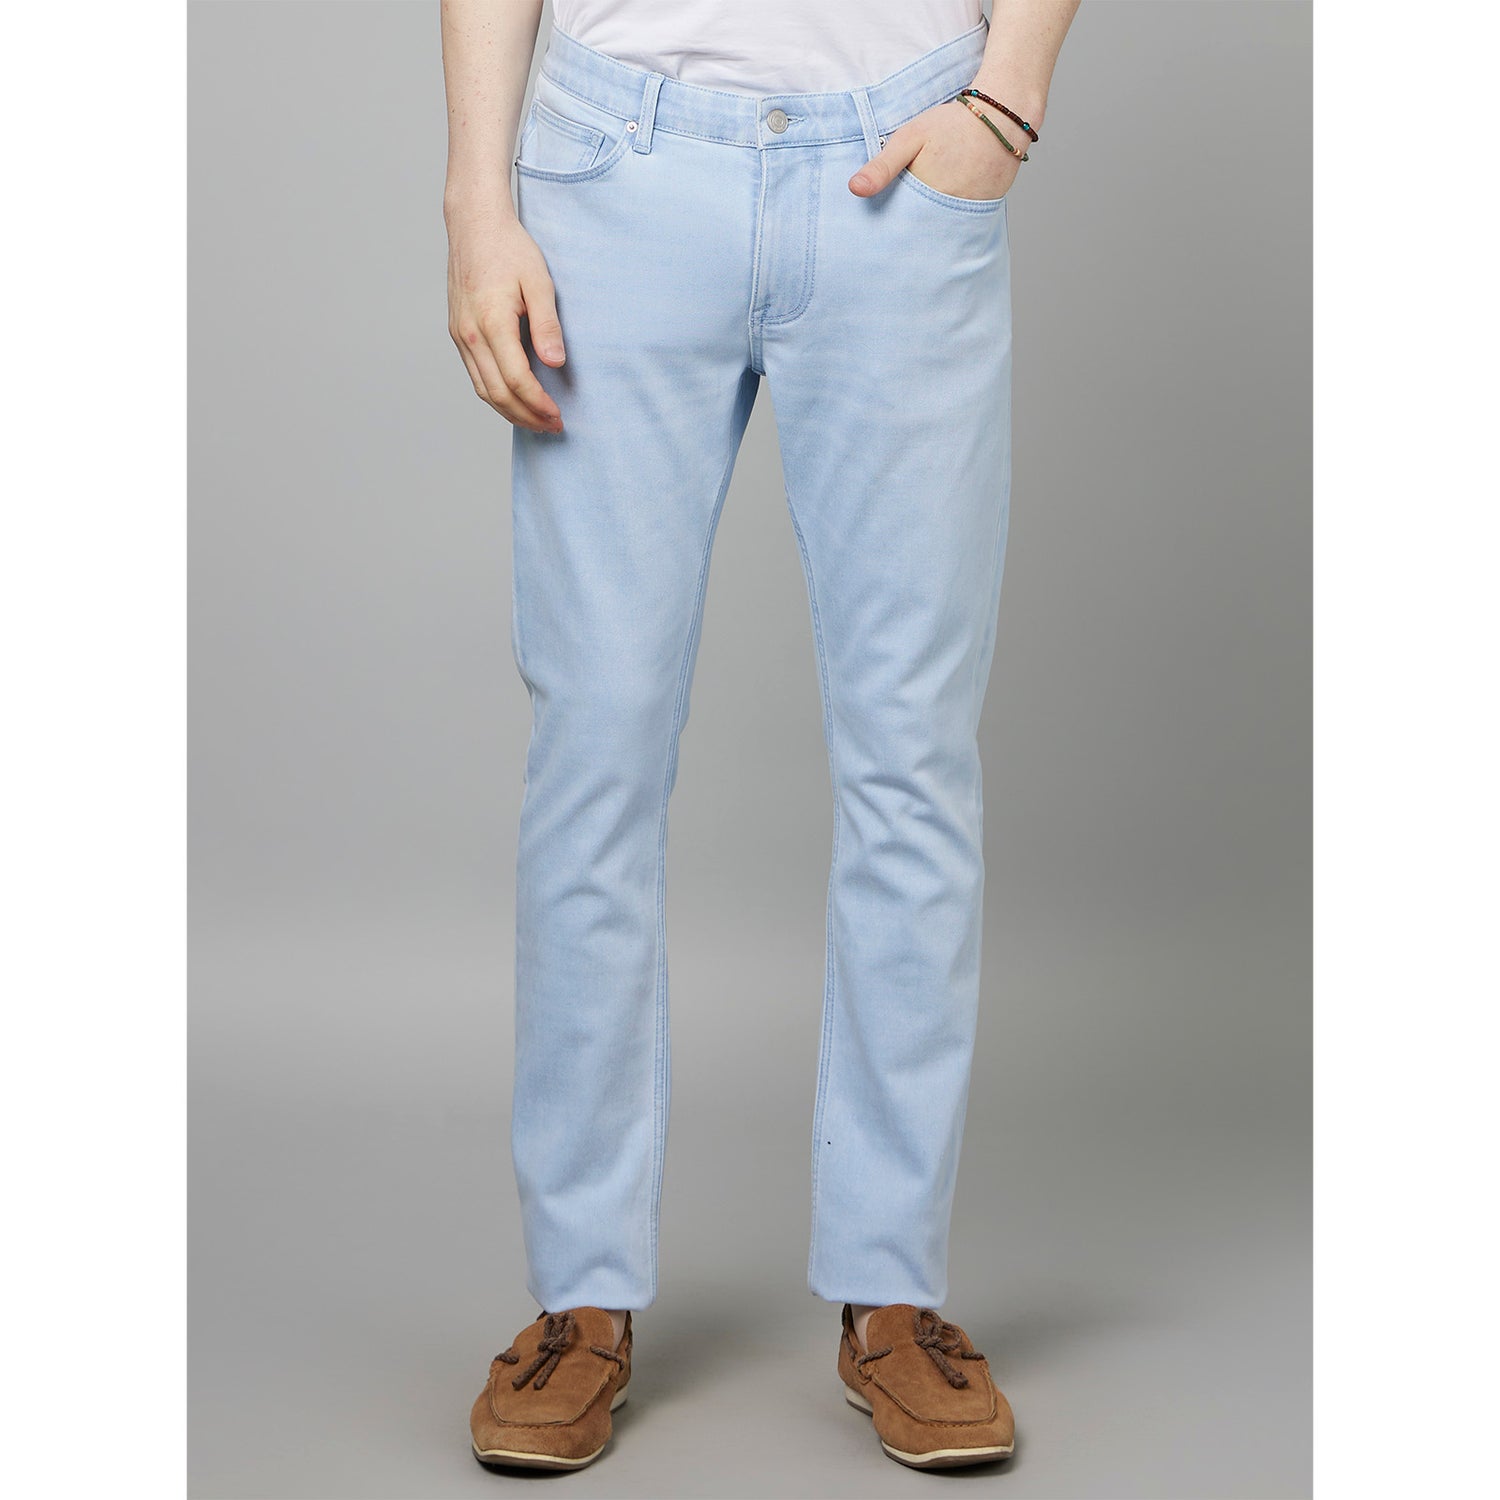 Light Blue Slim Fit Stretchable Cotton Jeans (FOACTIVE)